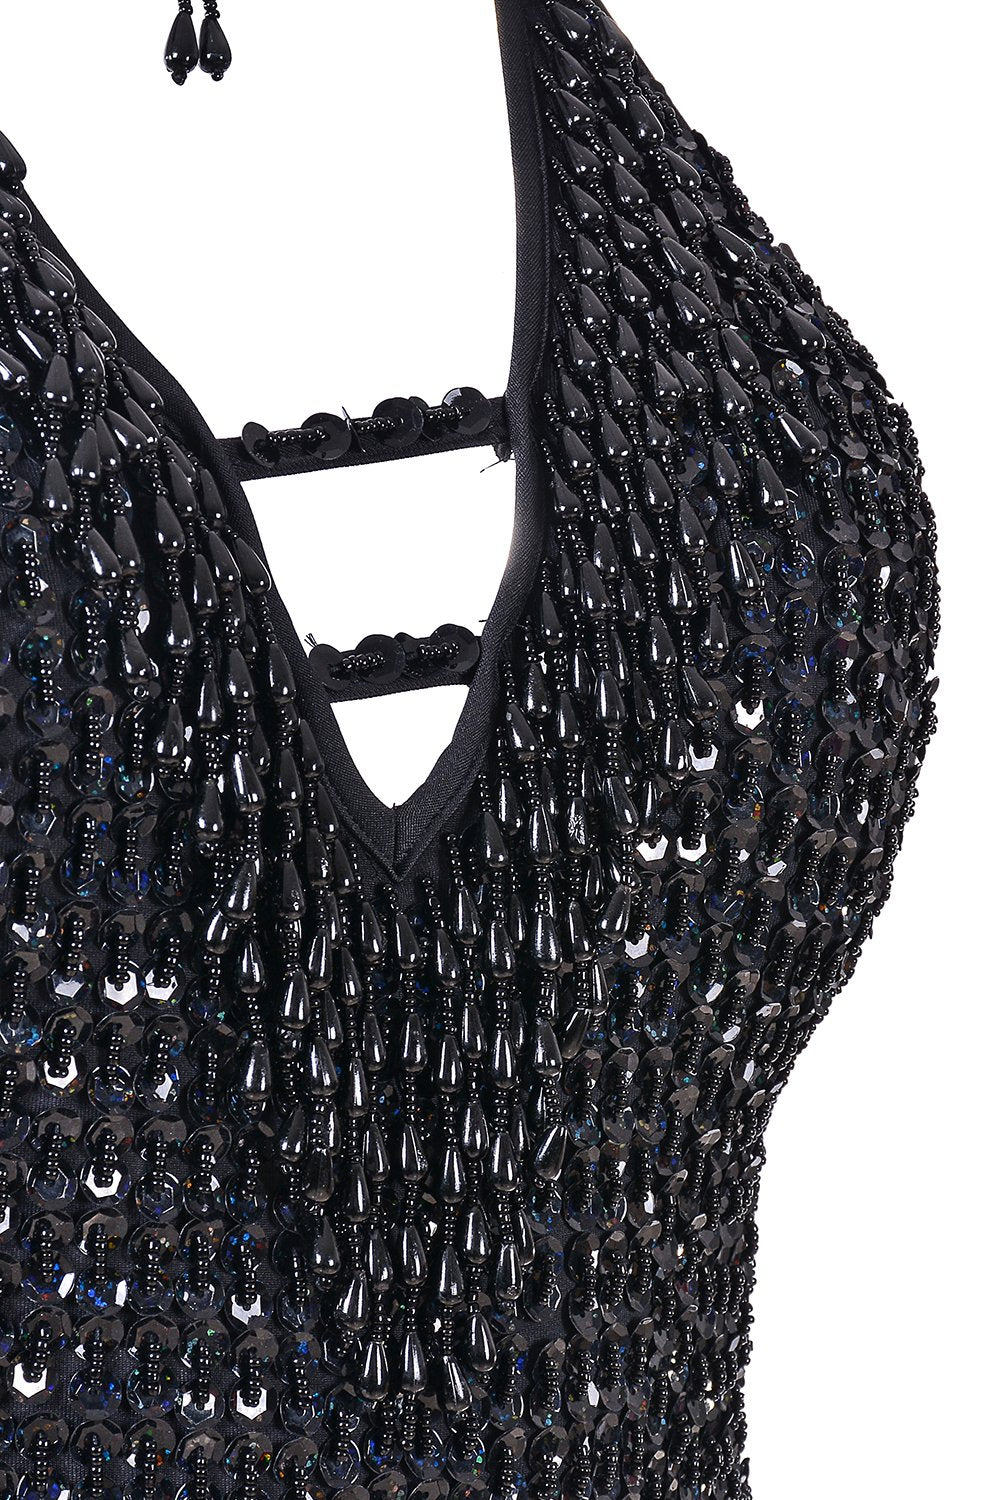 90s Glittery Black Bodysuit (S) — Holy Thrift